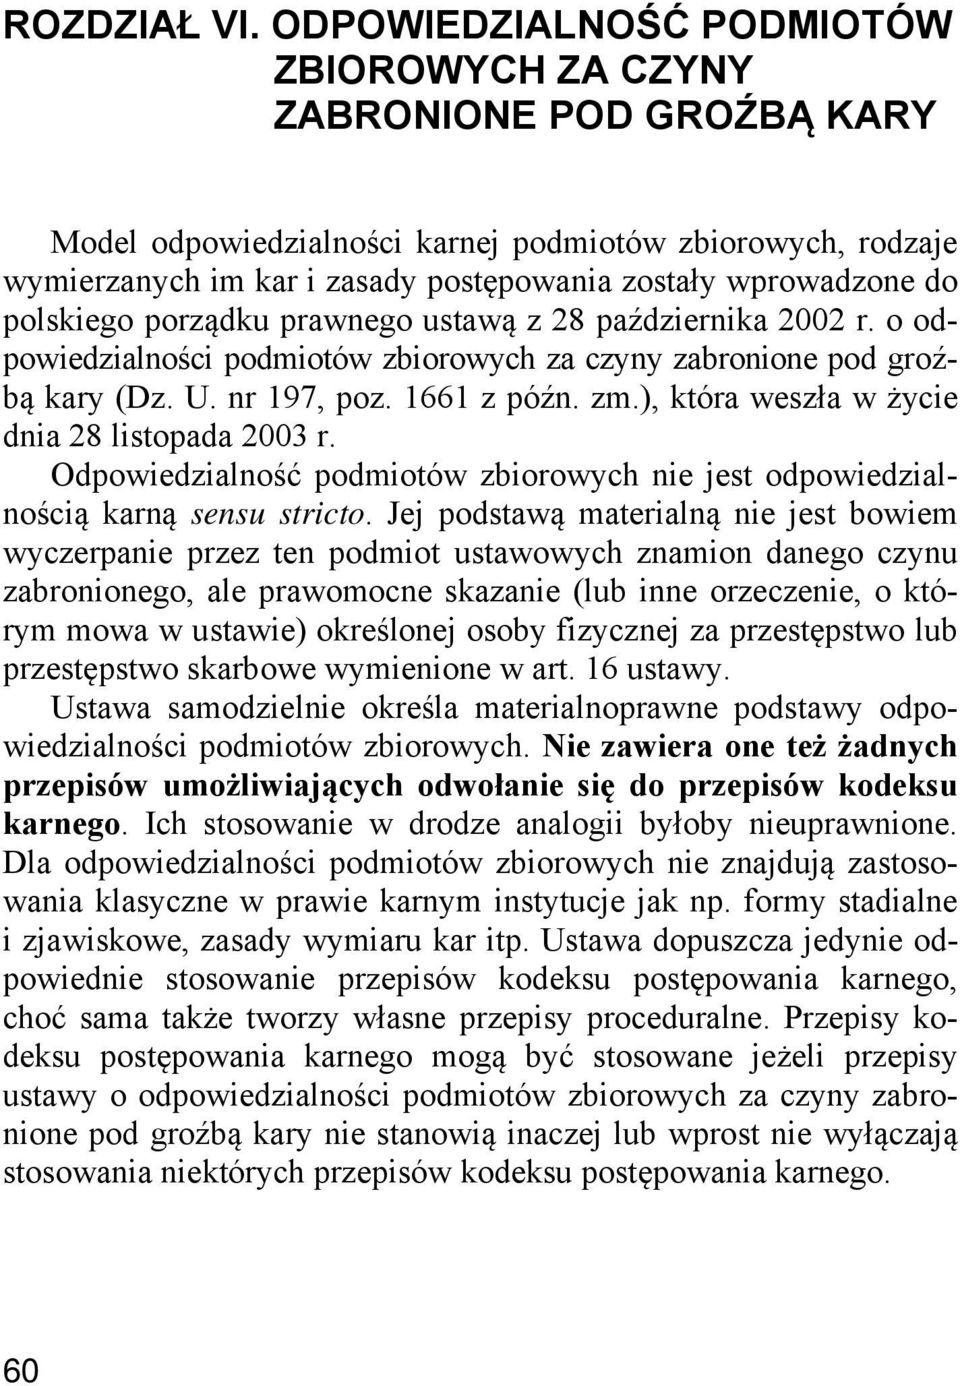 polskiego porządku prawnego ustawą z 28 października 2002 r. o odpowiedzialności podmiotów zbiorowych za czyny zabronione pod groźbą kary (Dz. U. nr 197, poz. 1661 z późn. zm.